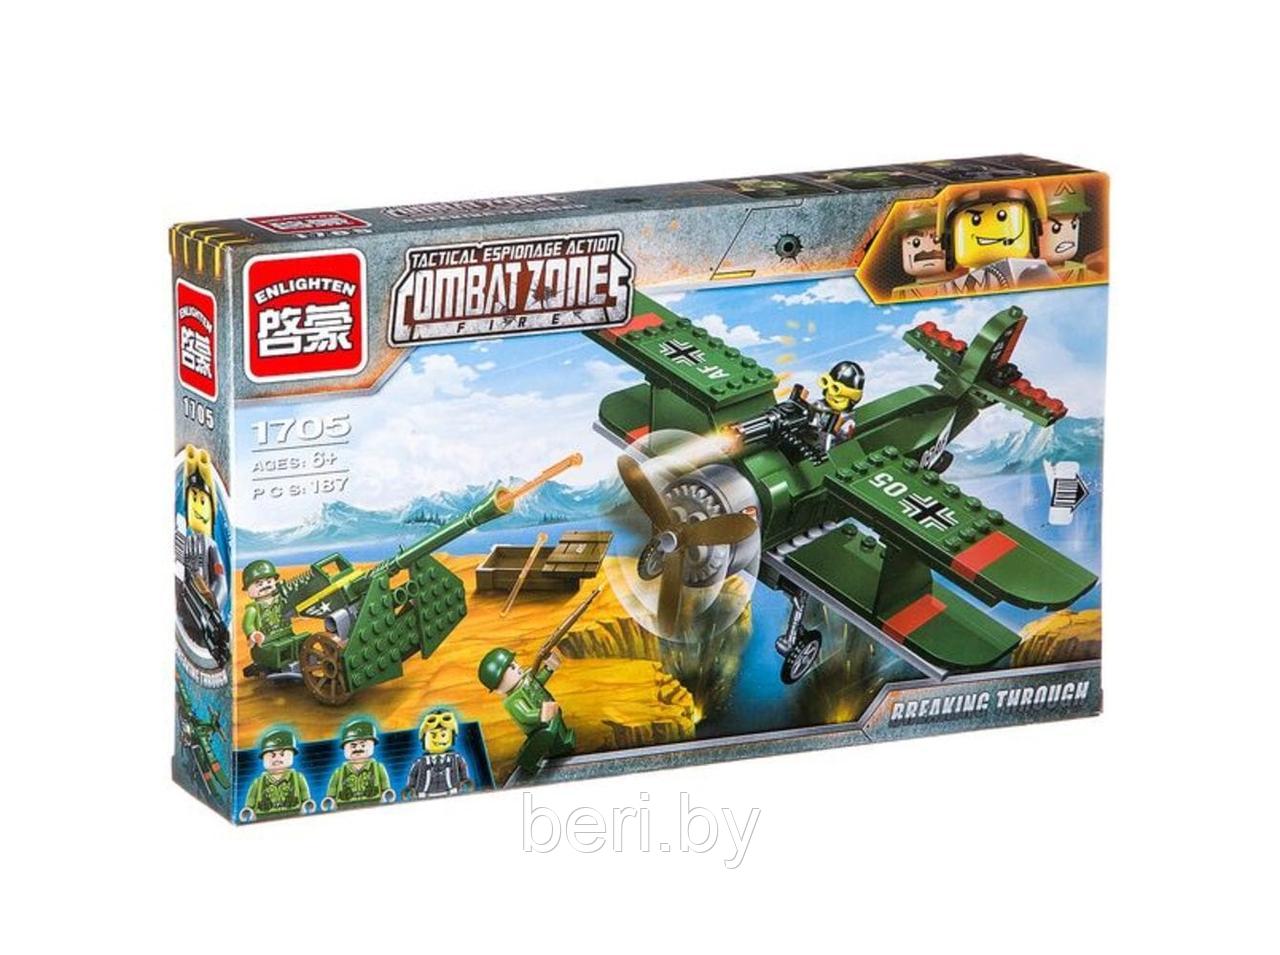 Конструктор Brick 1705 "Военный самолет", 187 деталей, аналог LEGO (Лего), (Брик)